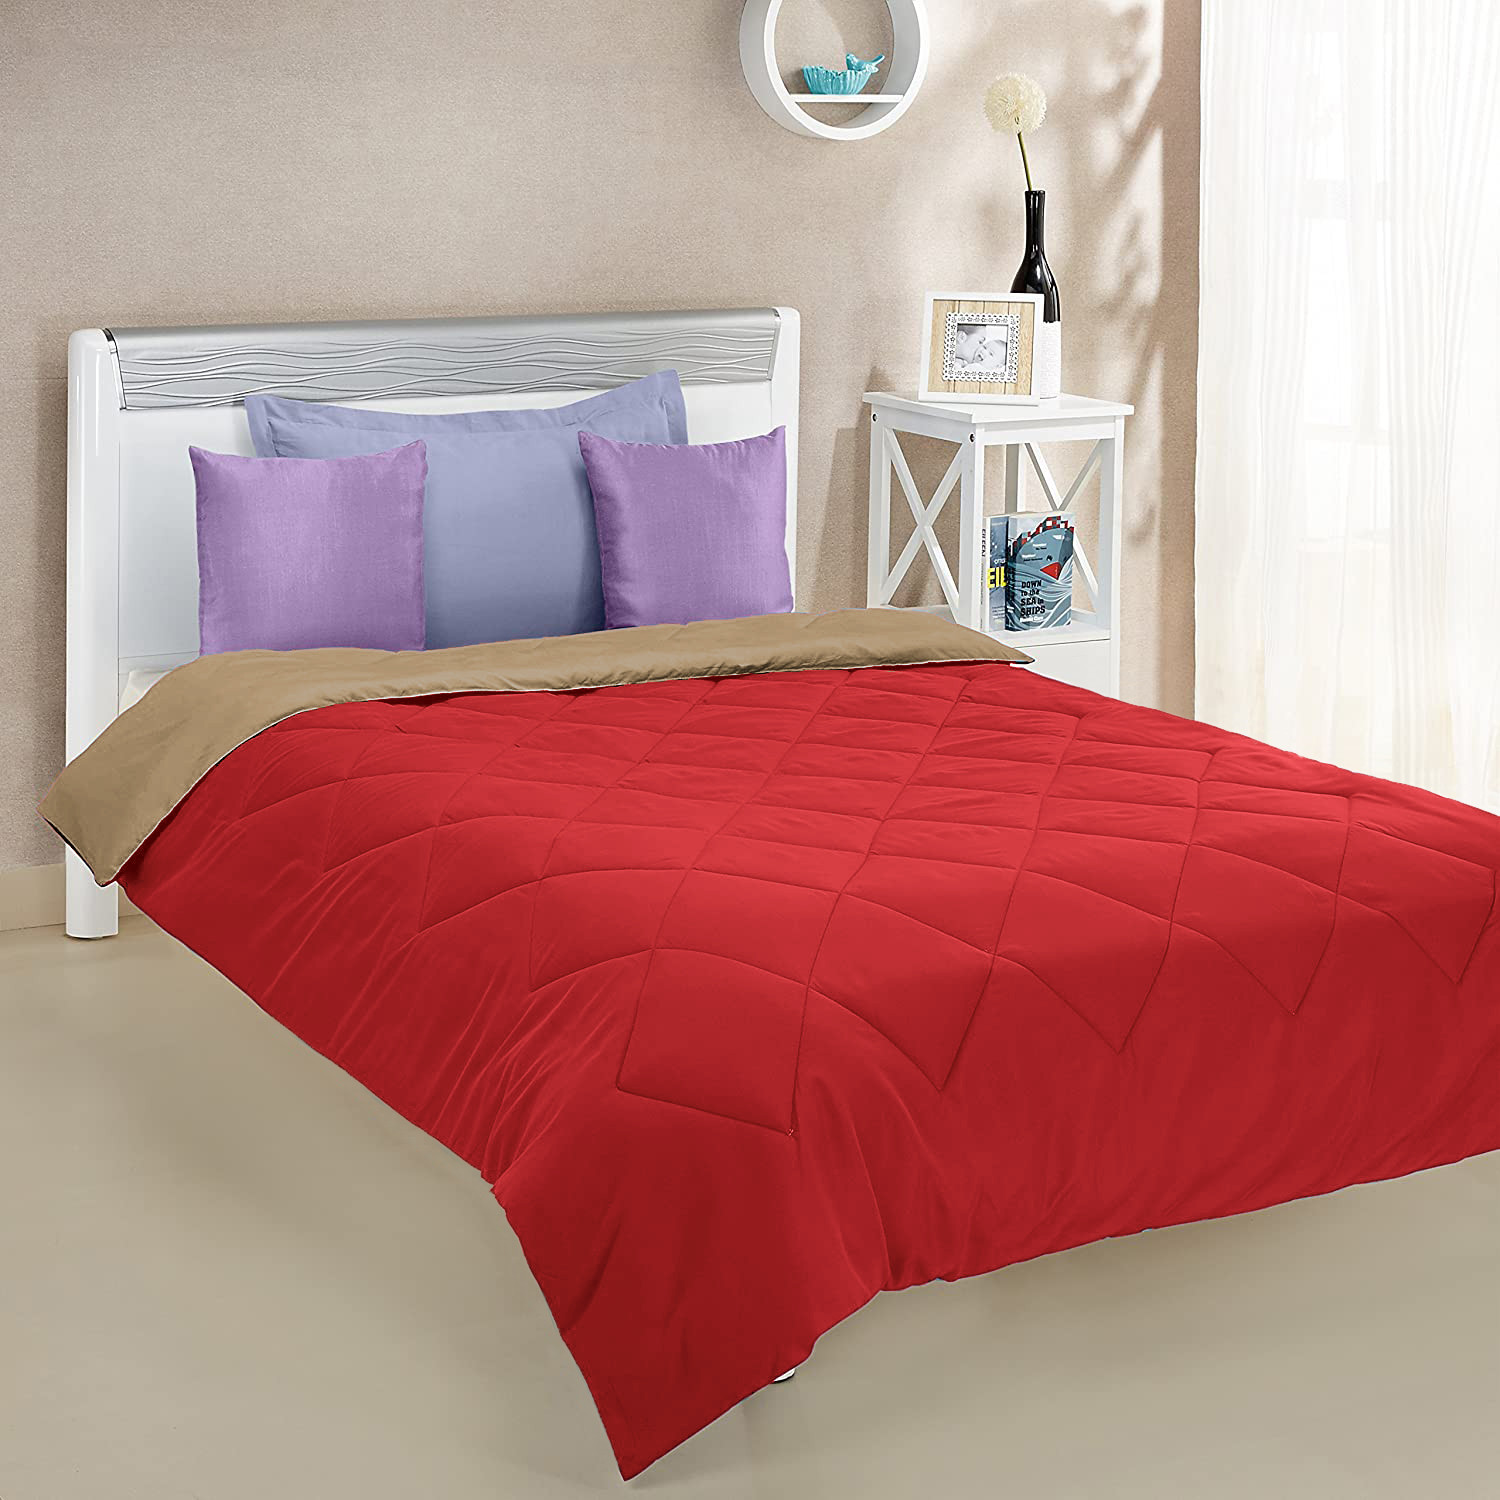 Kuber Industries Comforter for Double Bed|Microfiber Winter Comforter for Double Bed|220 GSM Reversible Comforter|AC Quilt|Dohar|Blanket |Pink & Beige